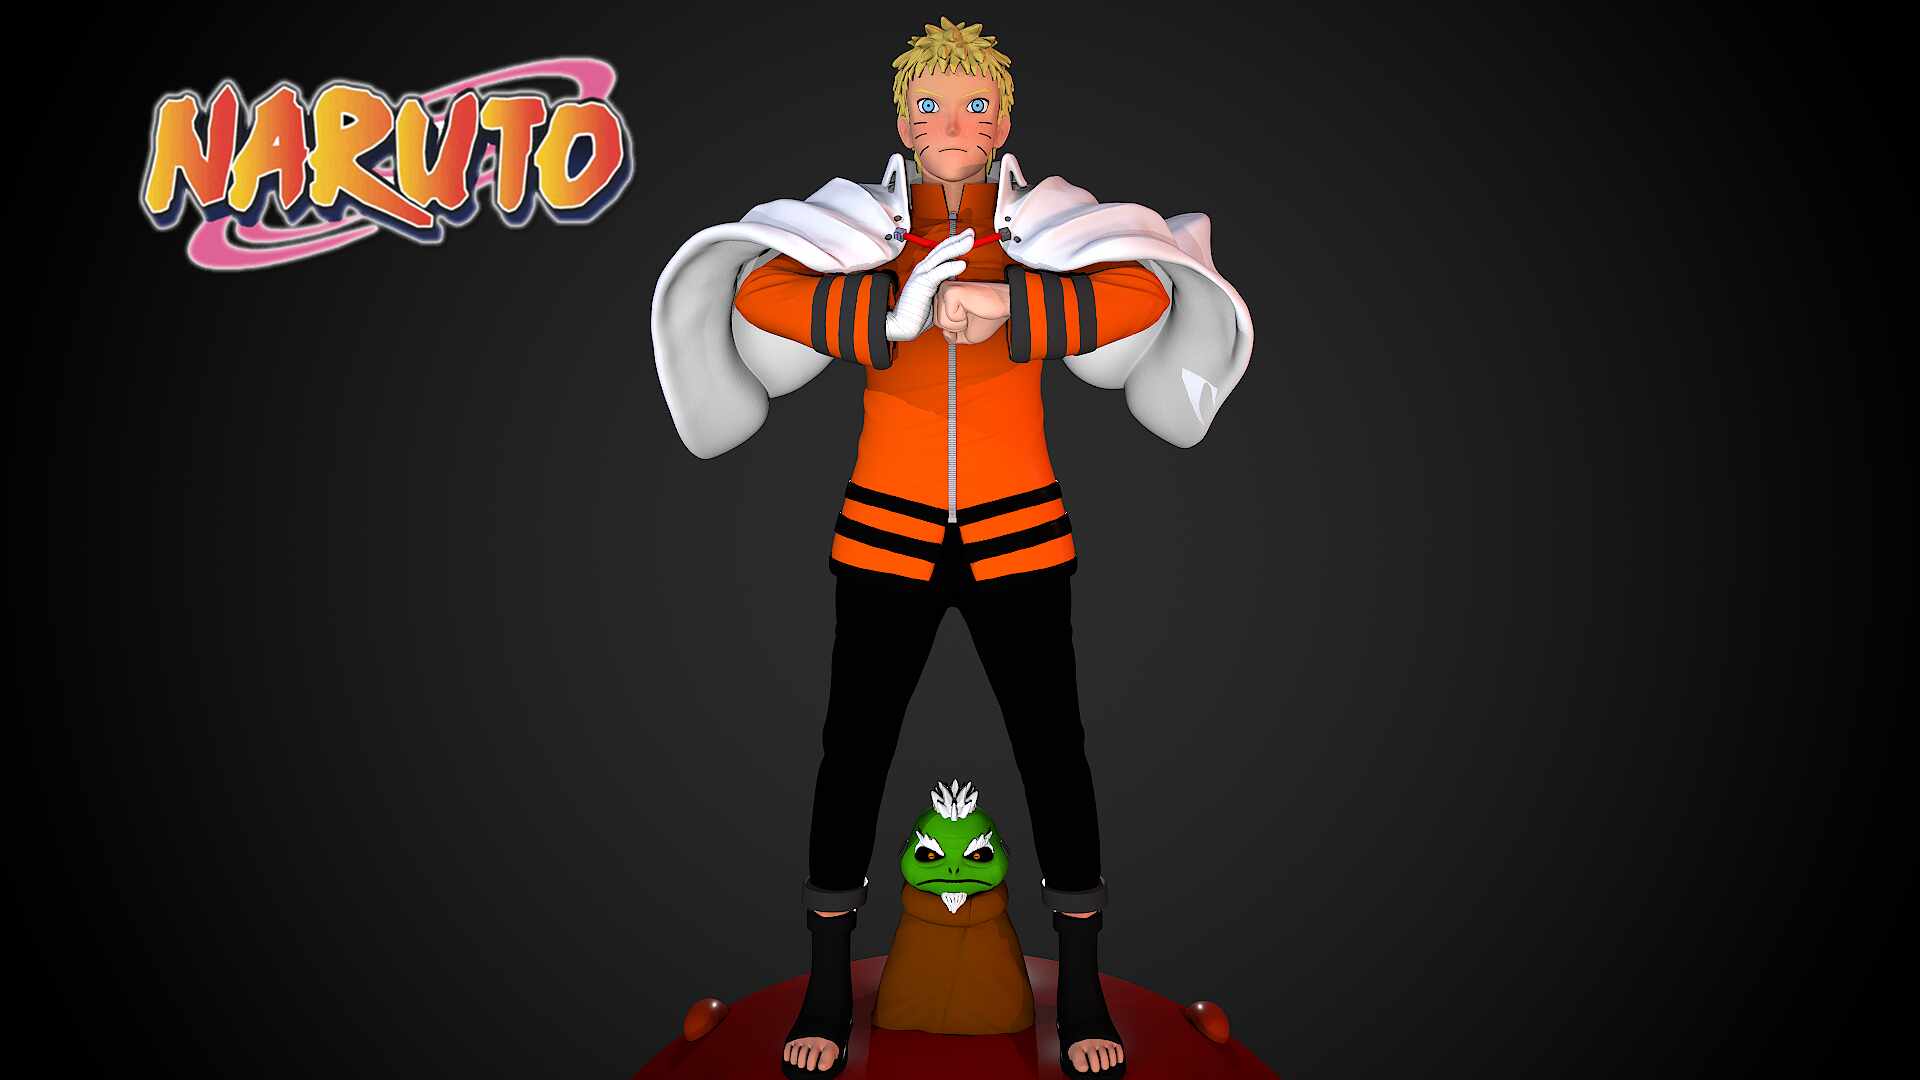 Naruto  Naruto uzumaki, Naruto uzumaki hokage, Naruto